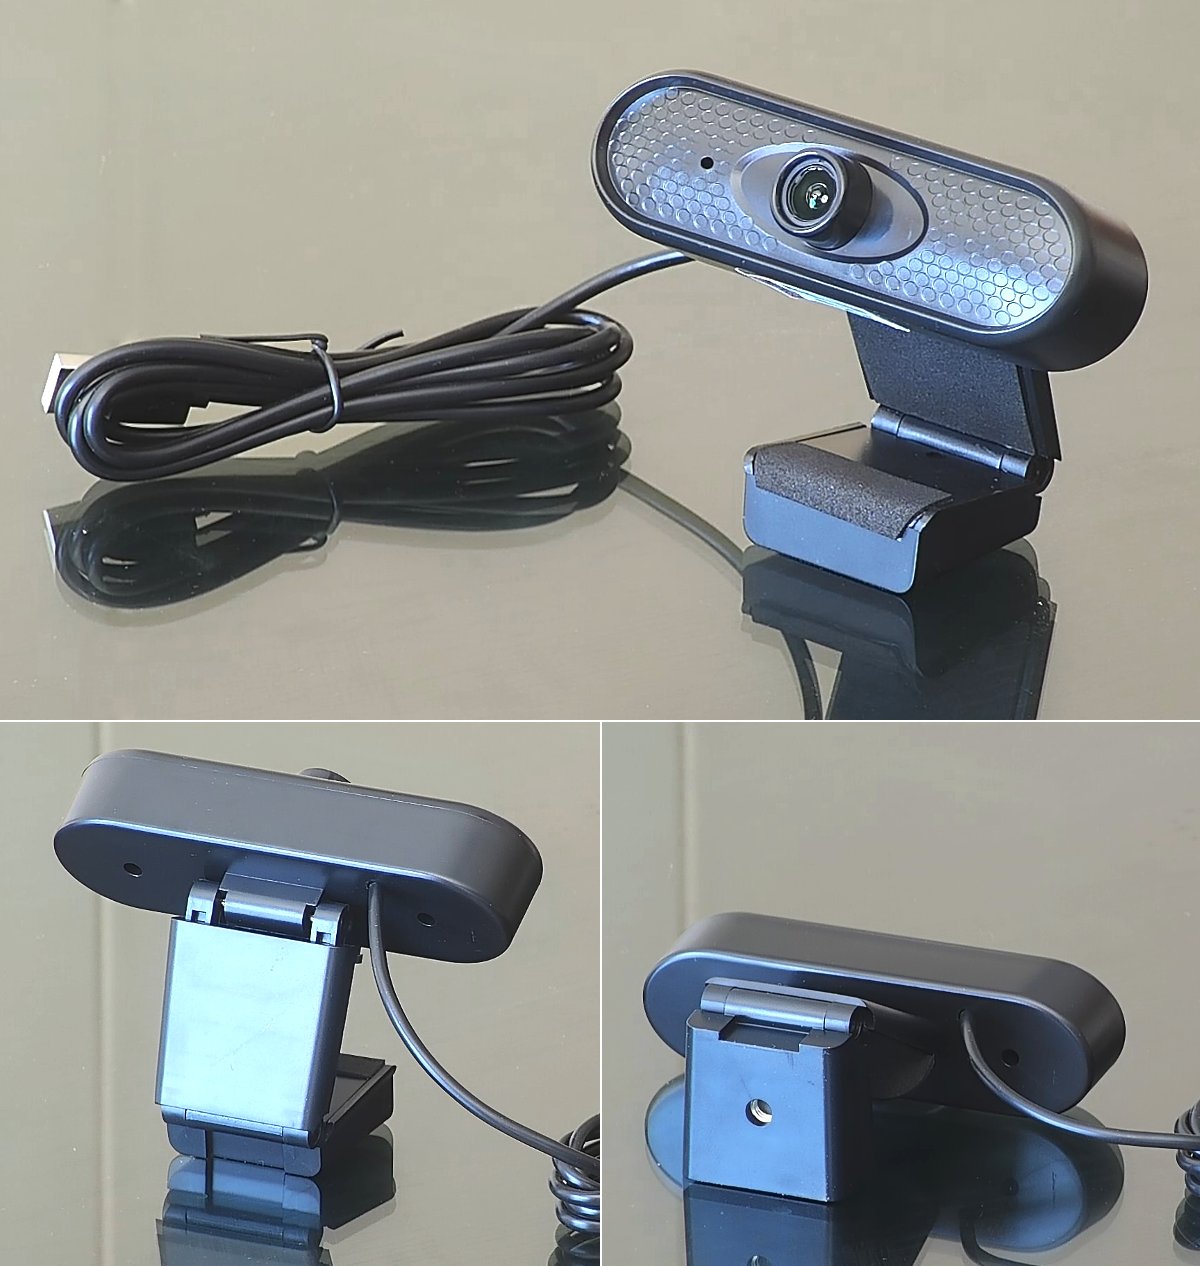 Sistema básico para videoconferencias y clases personales con cámara HD1080p Q6